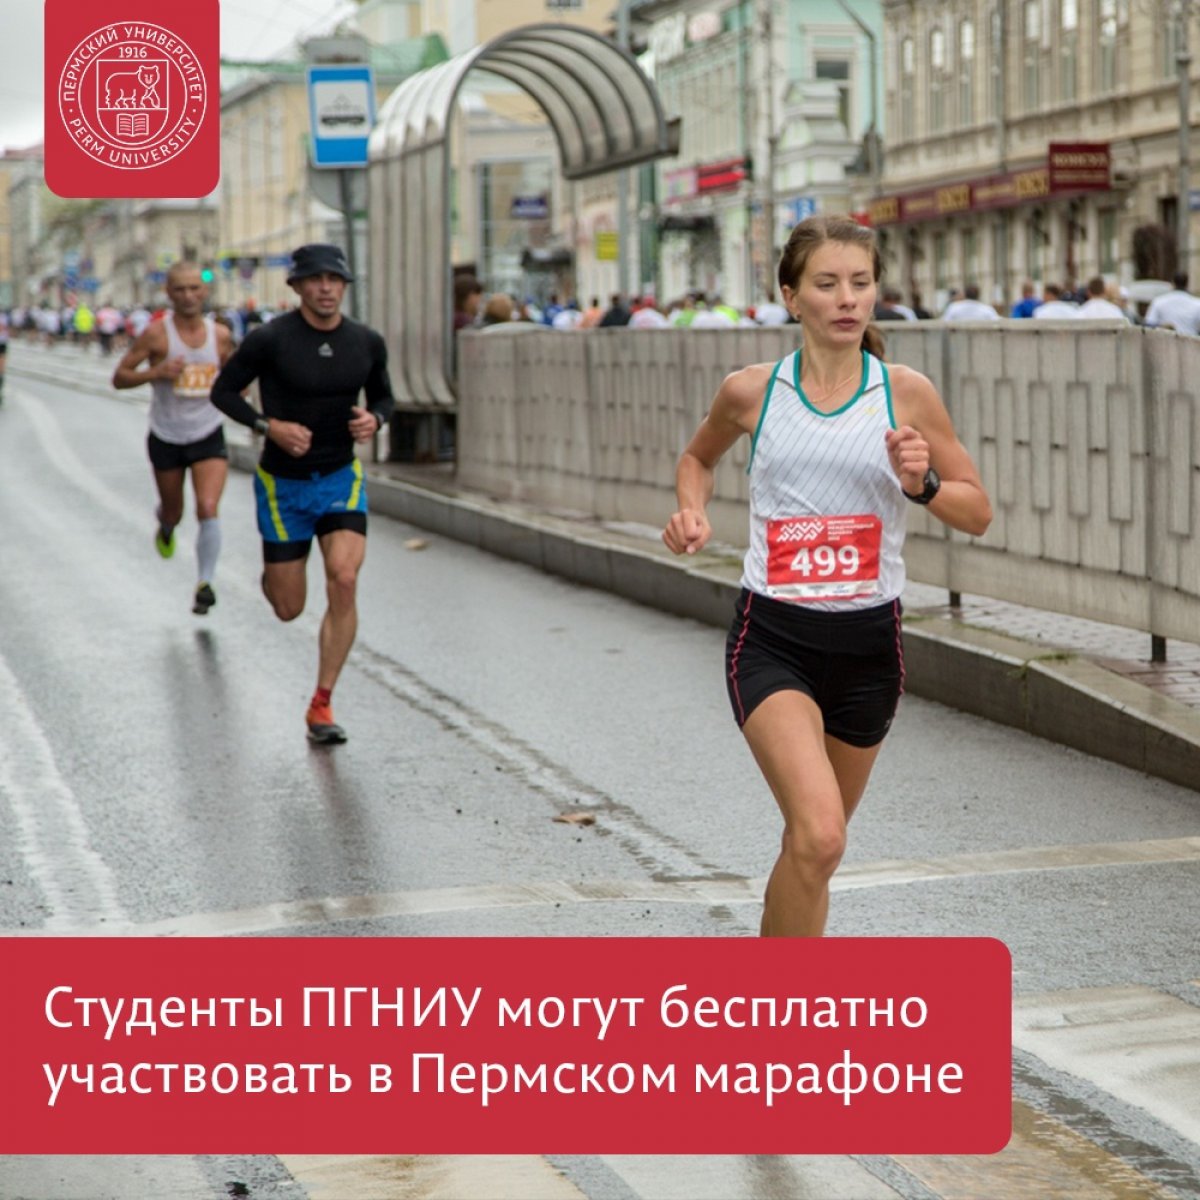 Спортивный клуб «Универ» даёт возможность бесплатно поучаствовать в Пермском марафоне